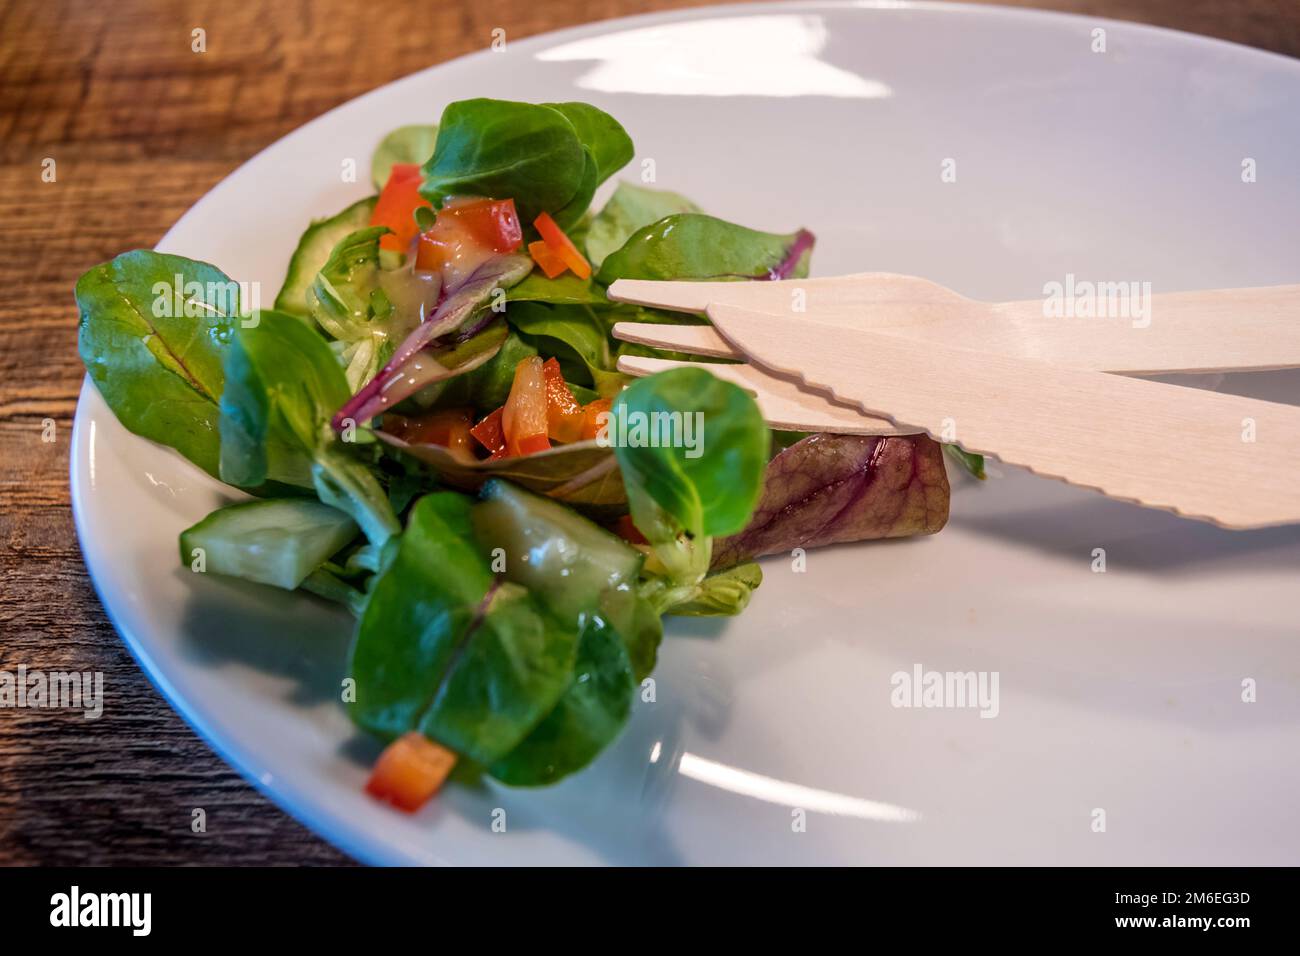 Posate di legno ecocompatibili su un piatto con insalata laterale. Alternativa alla plastica monouso meno ecologica in un bar. Foto Stock